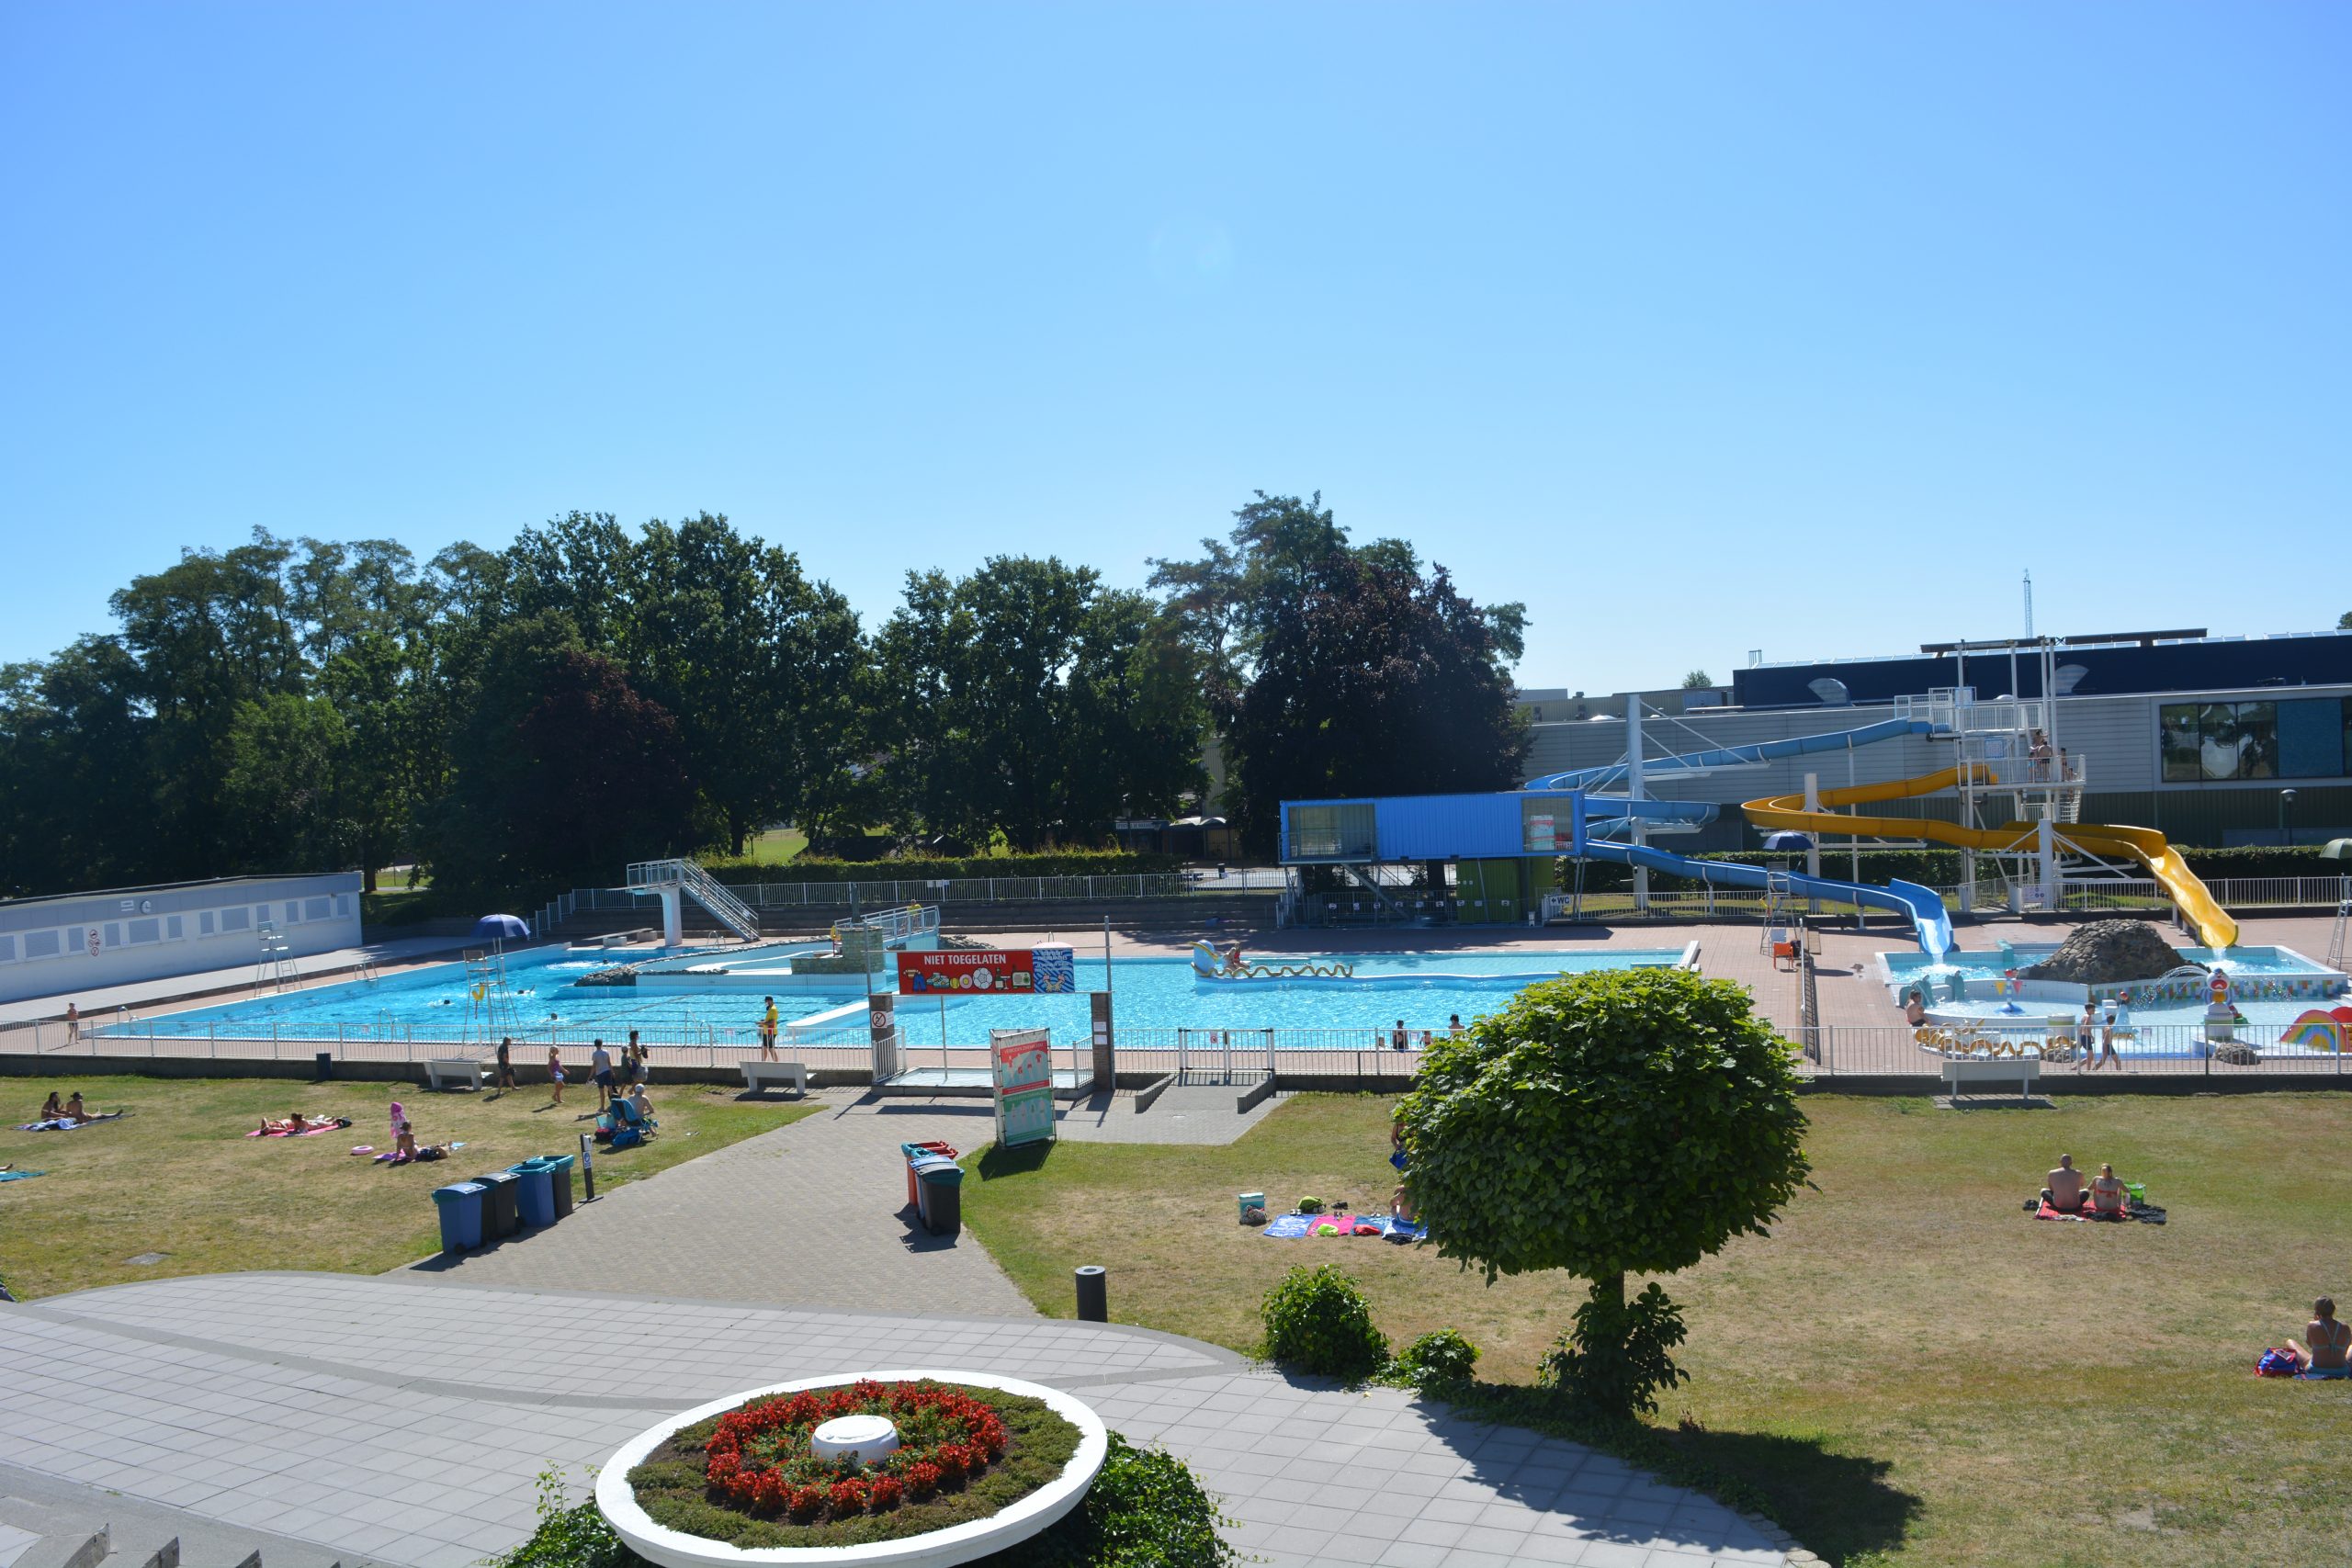 Openlucht zwembad Wetteren gaat open op 7 juni